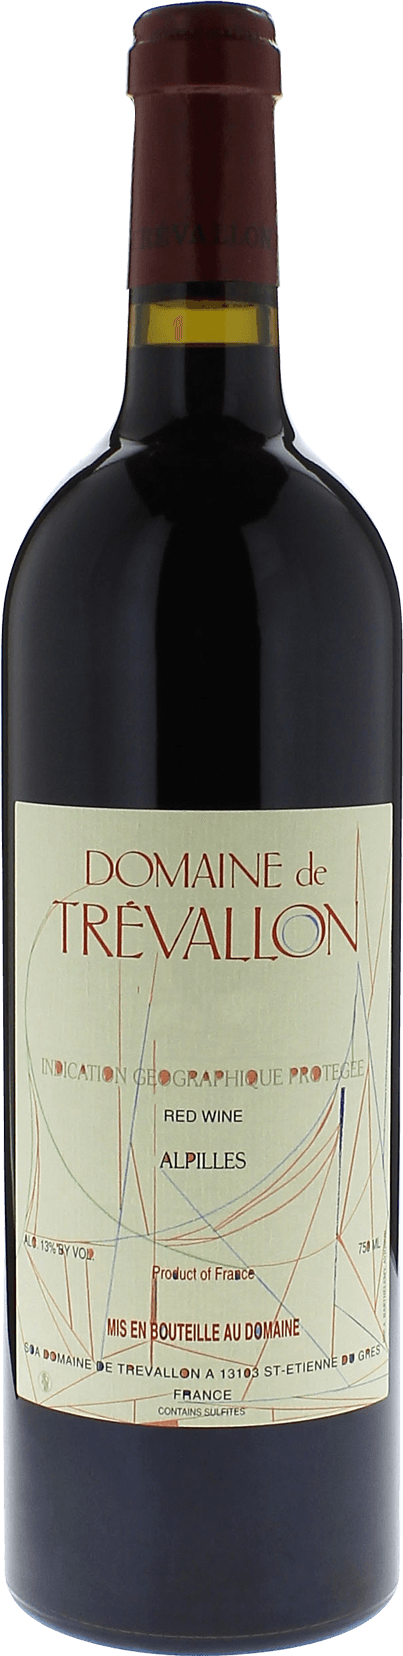 Domaine de trevallon rouge 2000  Vin de Pays, Provence